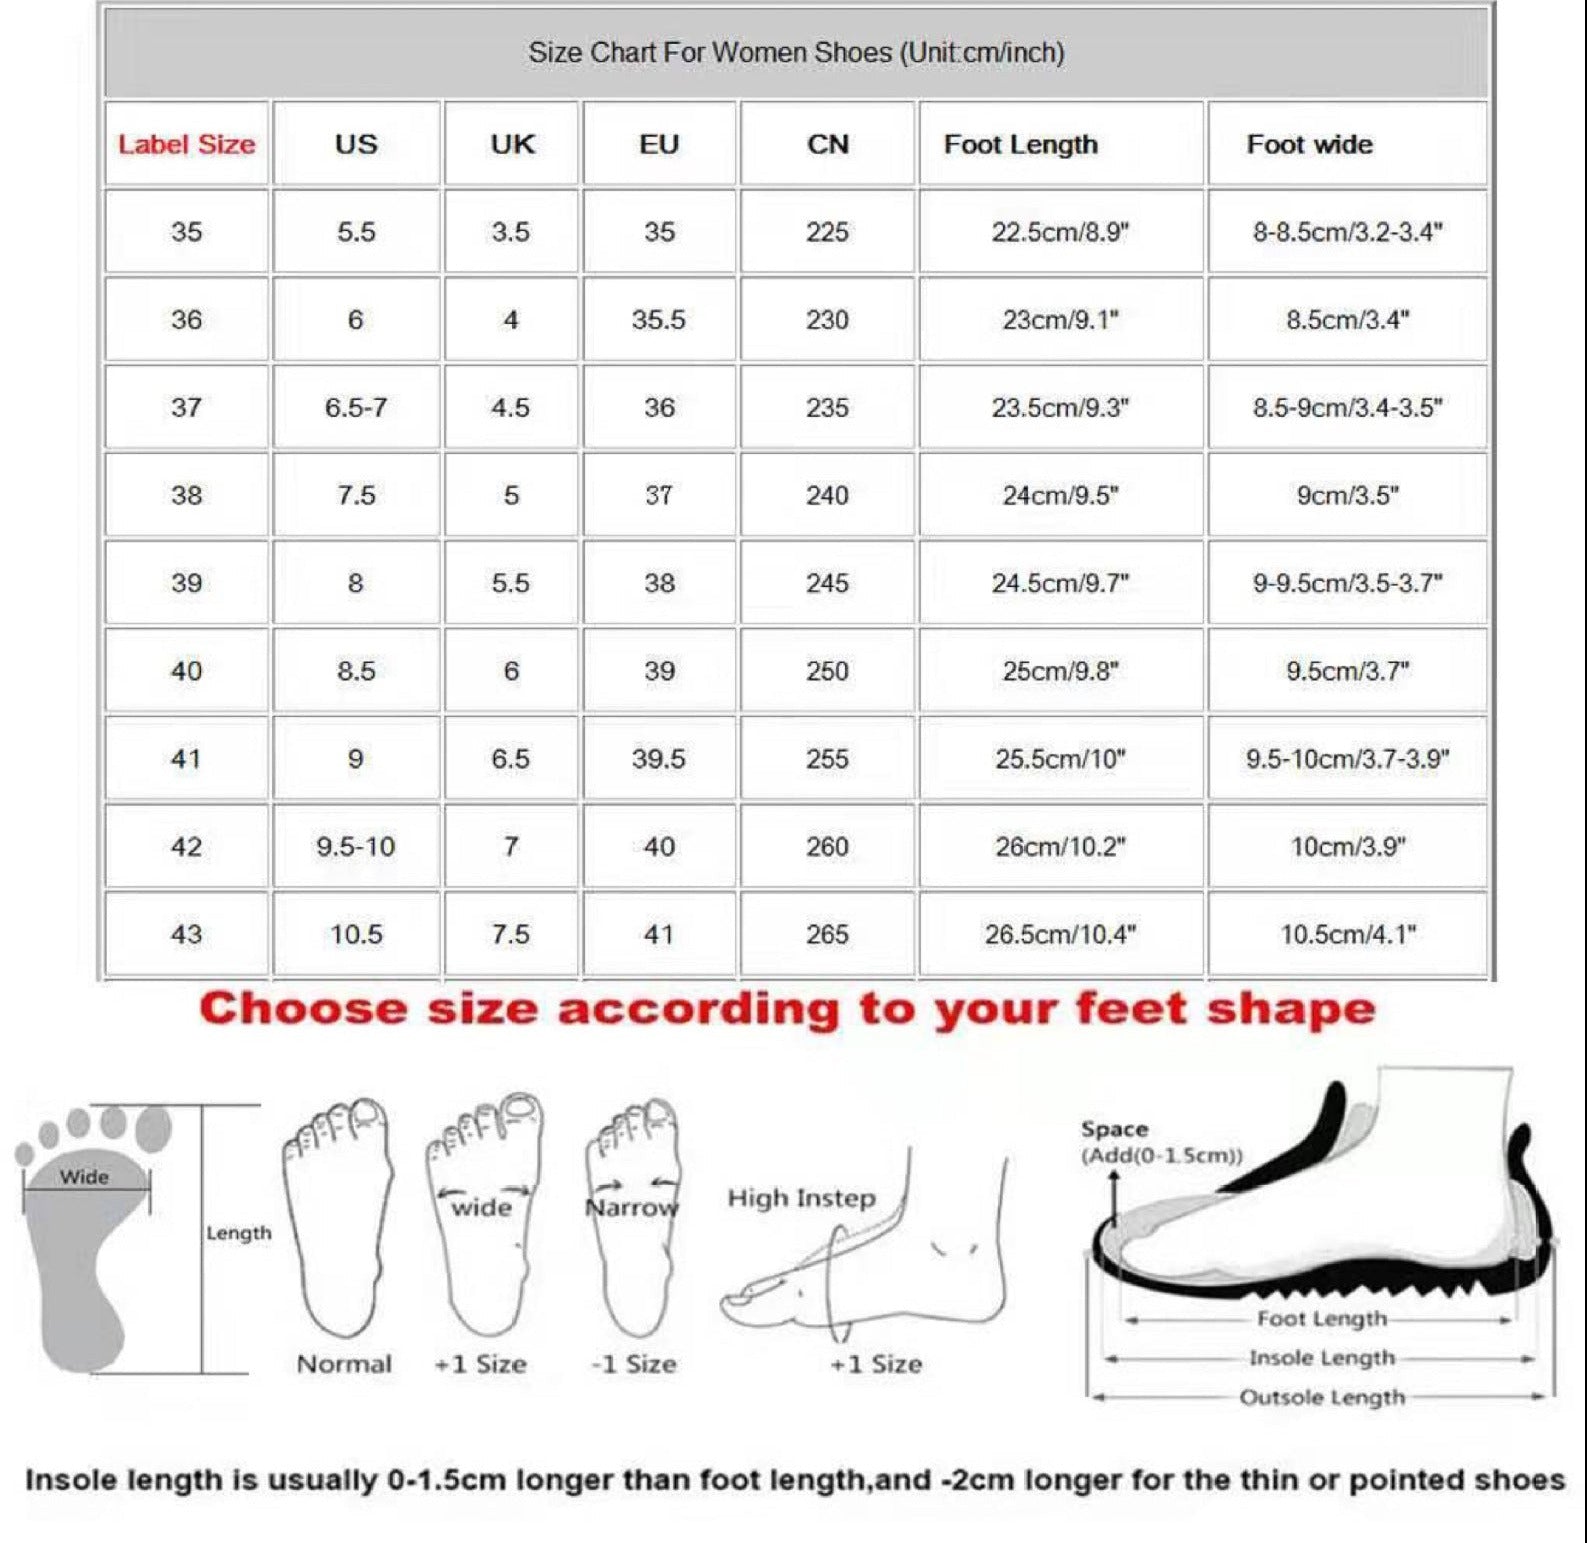 Beach sandals size chart